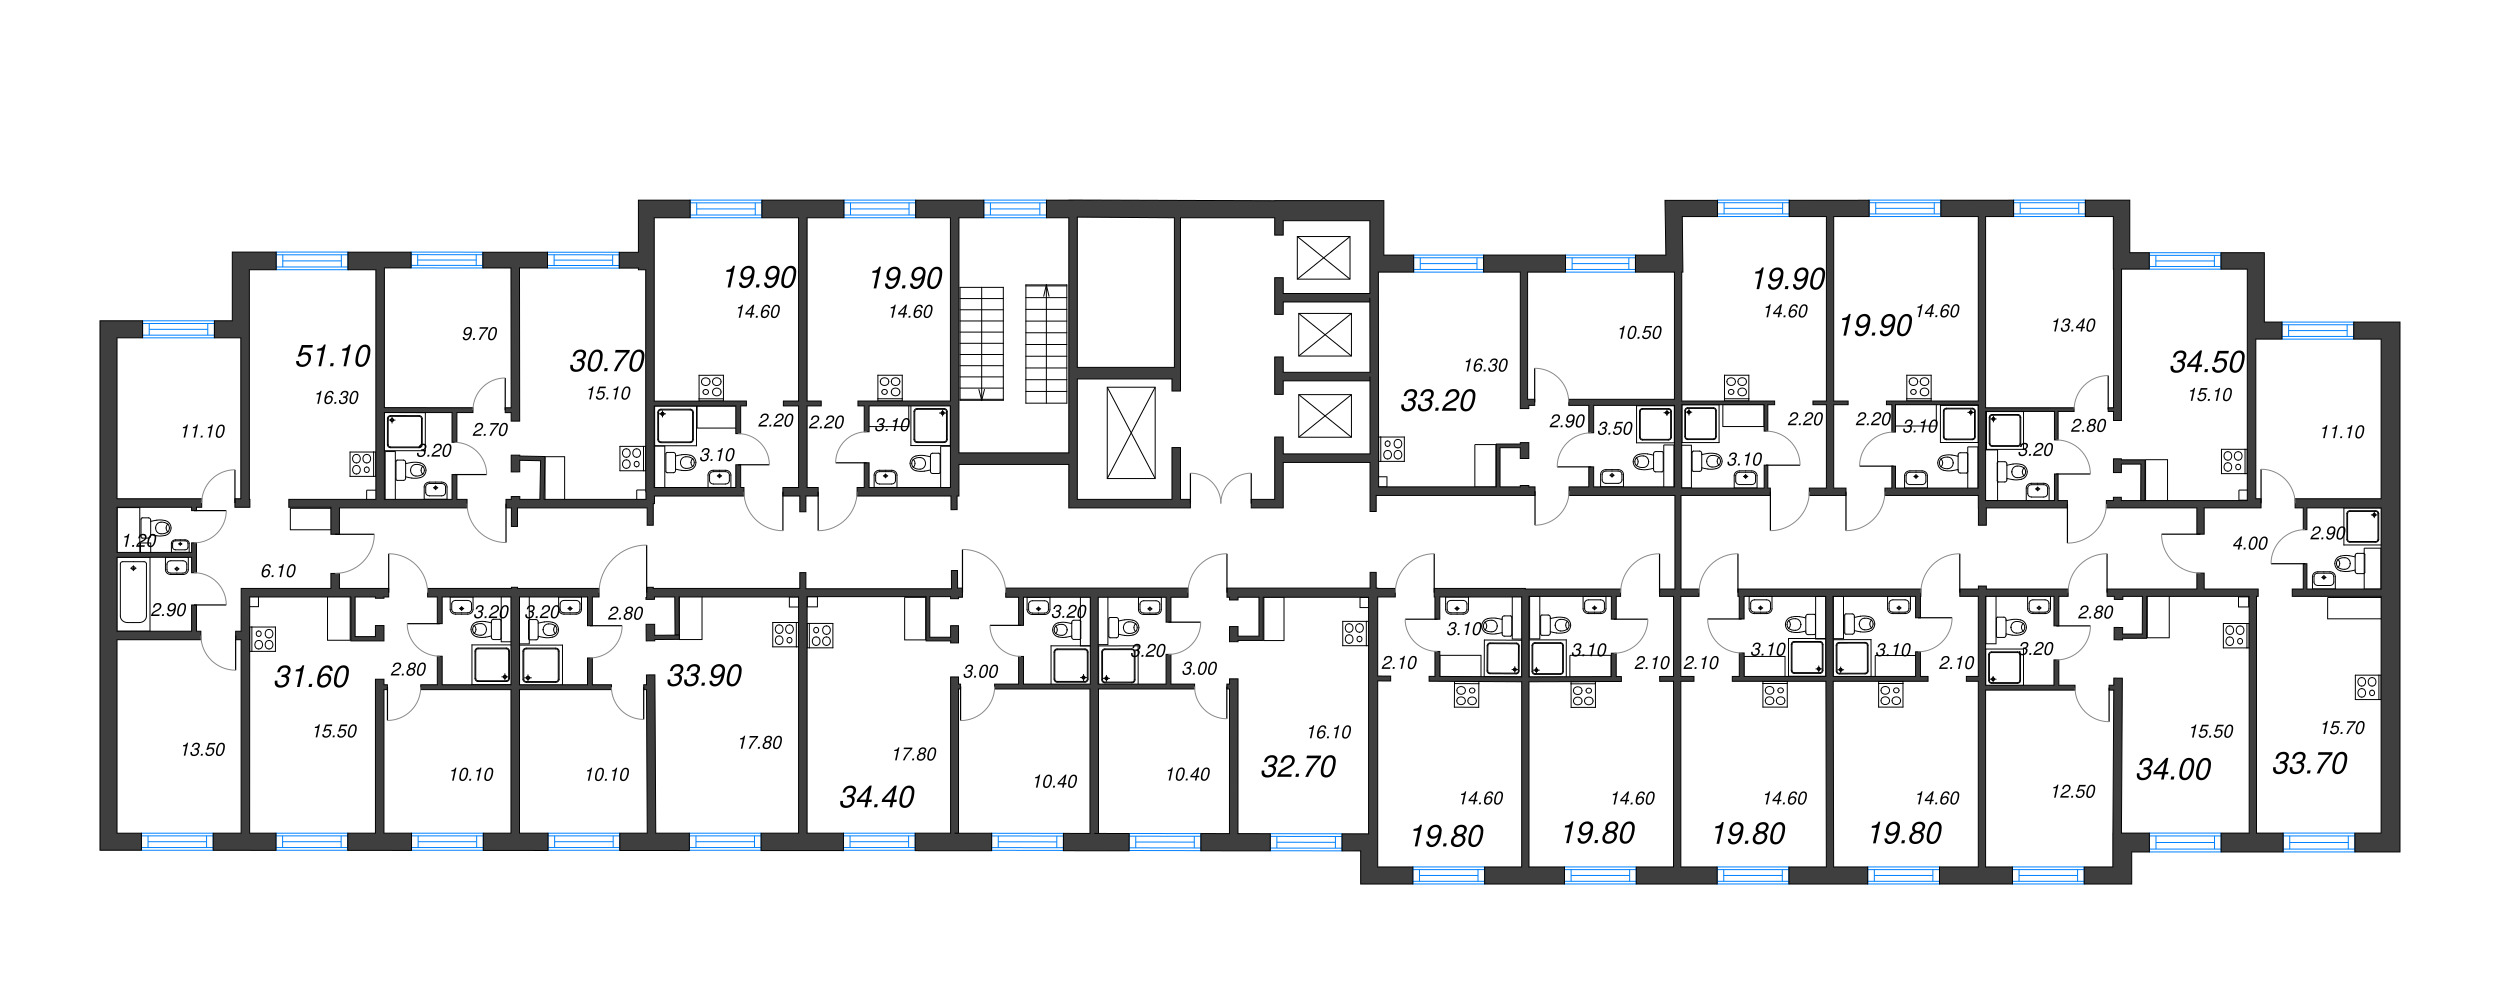 2-комнатная (Евро) квартира, 30.7 м² в ЖК "Цветной город" - планировка этажа